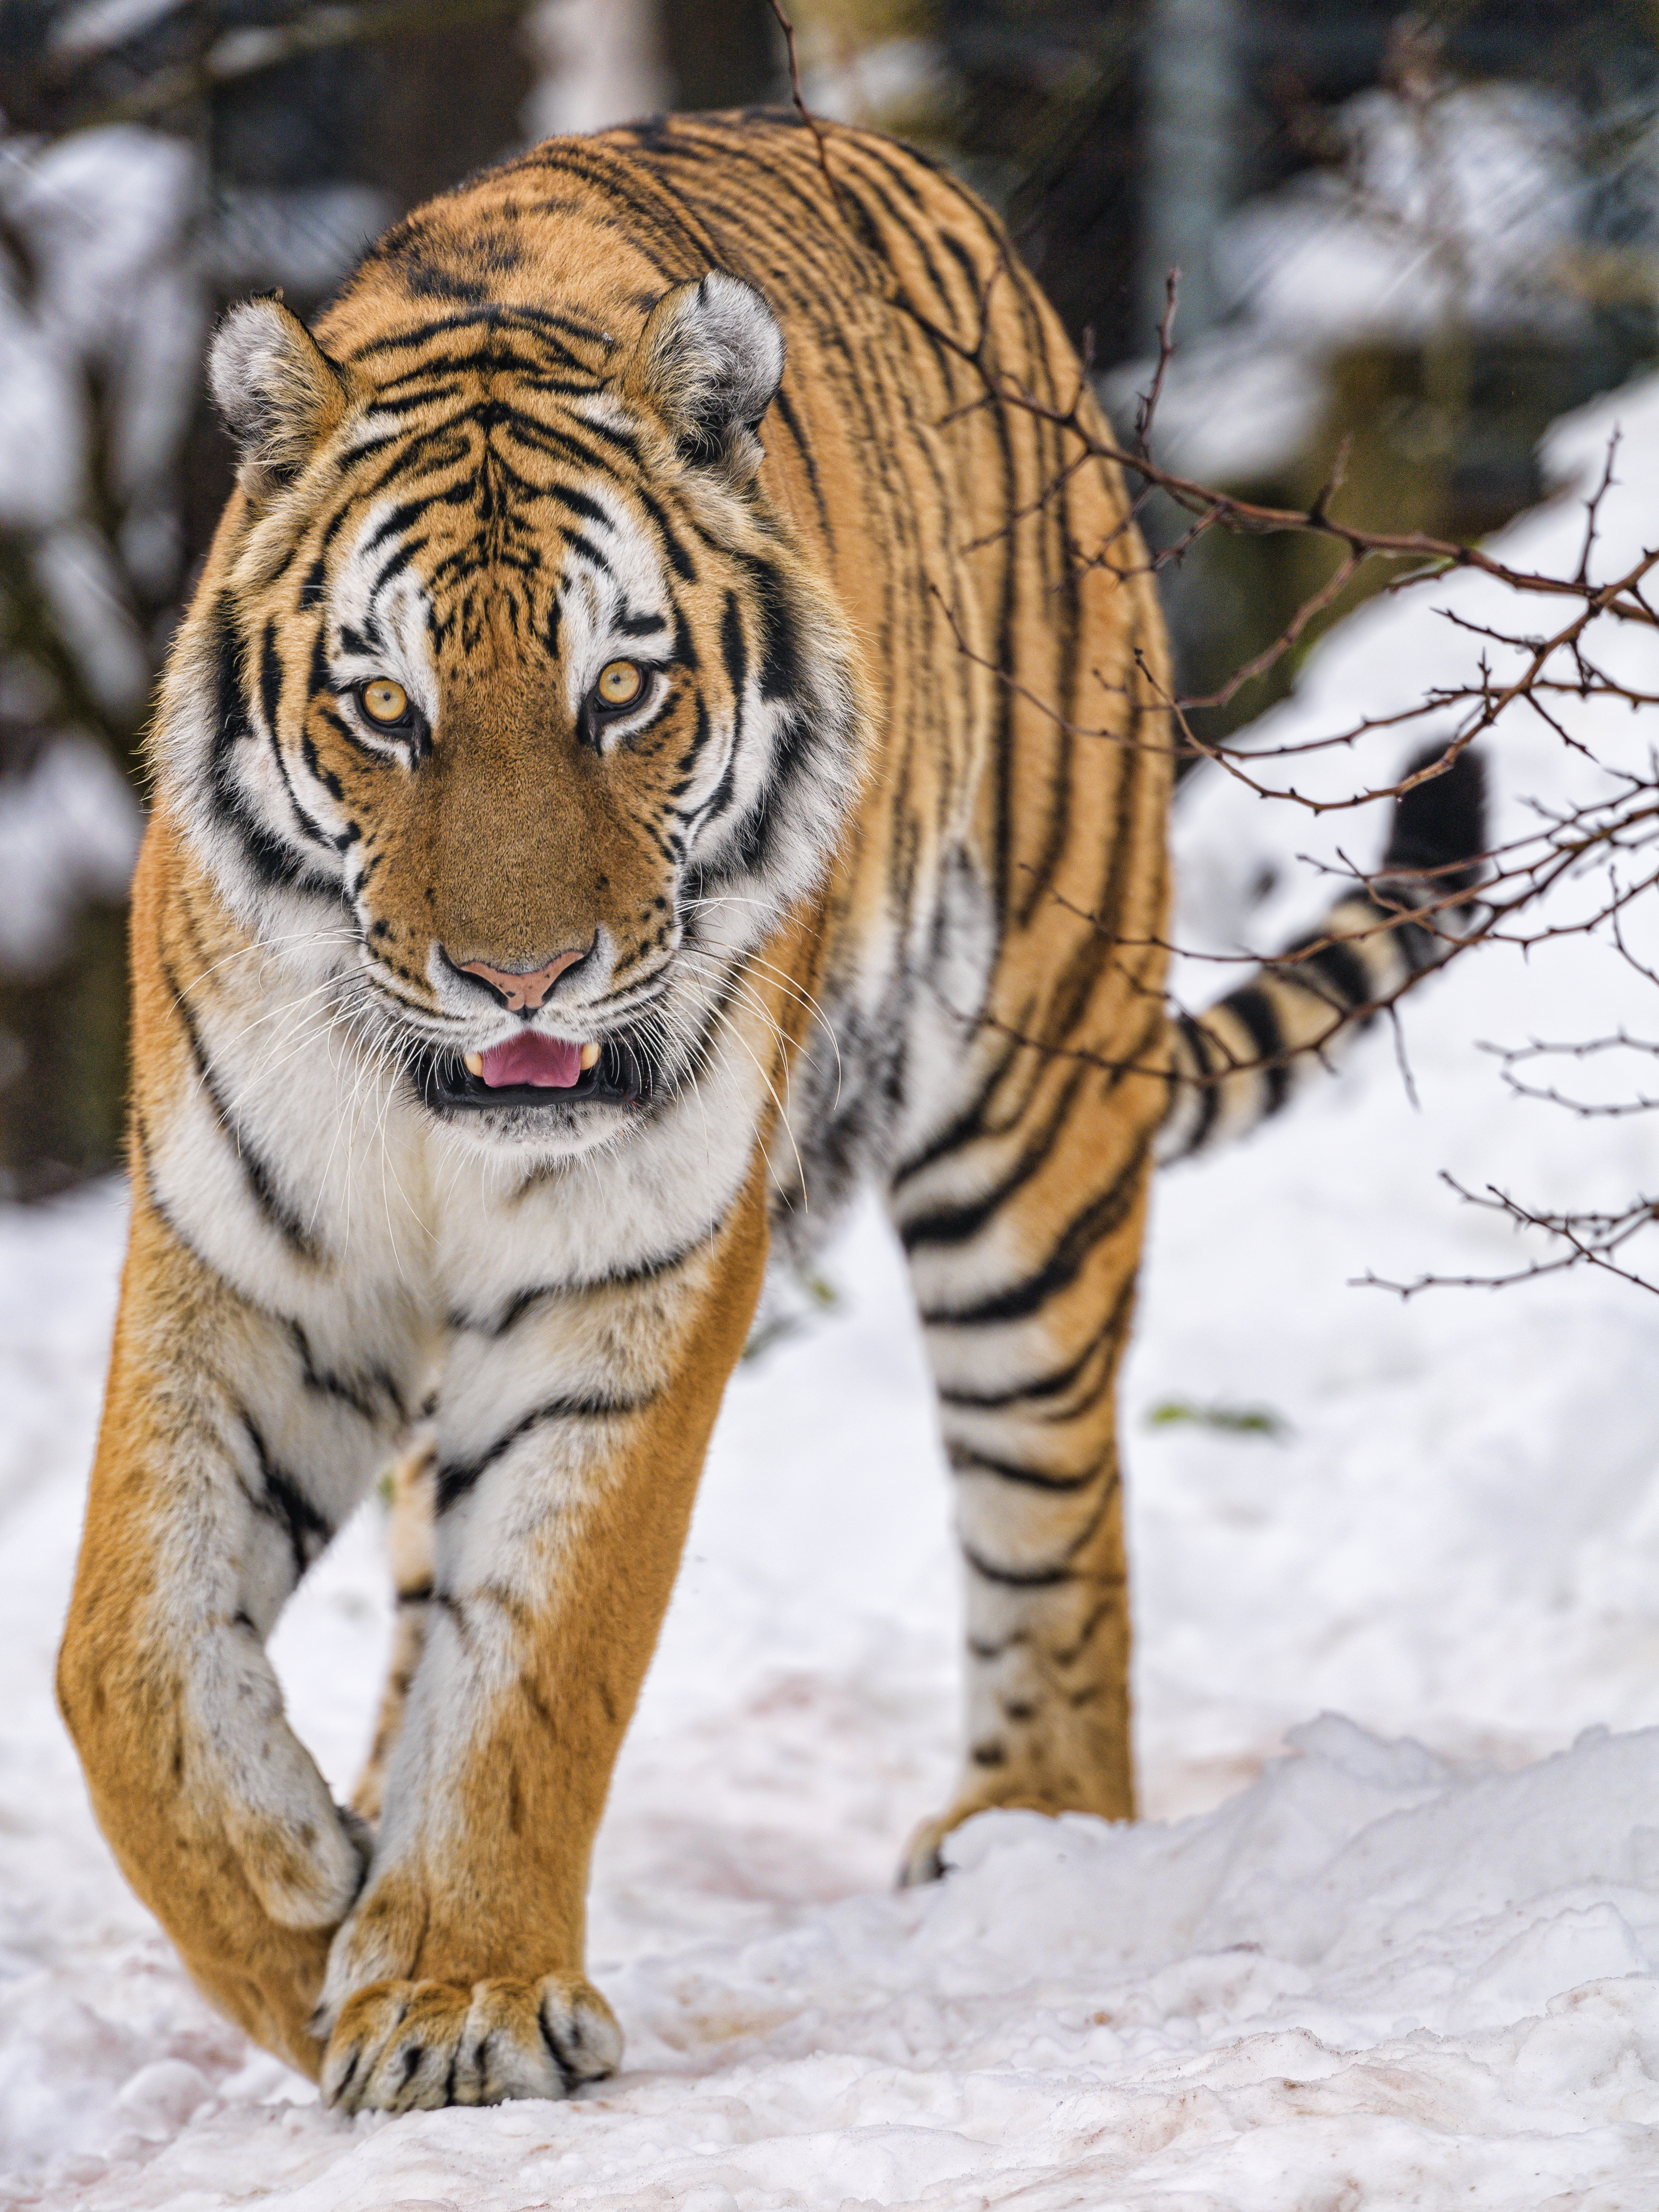 Скачать обои бесплатно Животное, Снег, Животные, Дикая Природа, Хищник, Большая Кошка, Тигр картинка на рабочий стол ПК